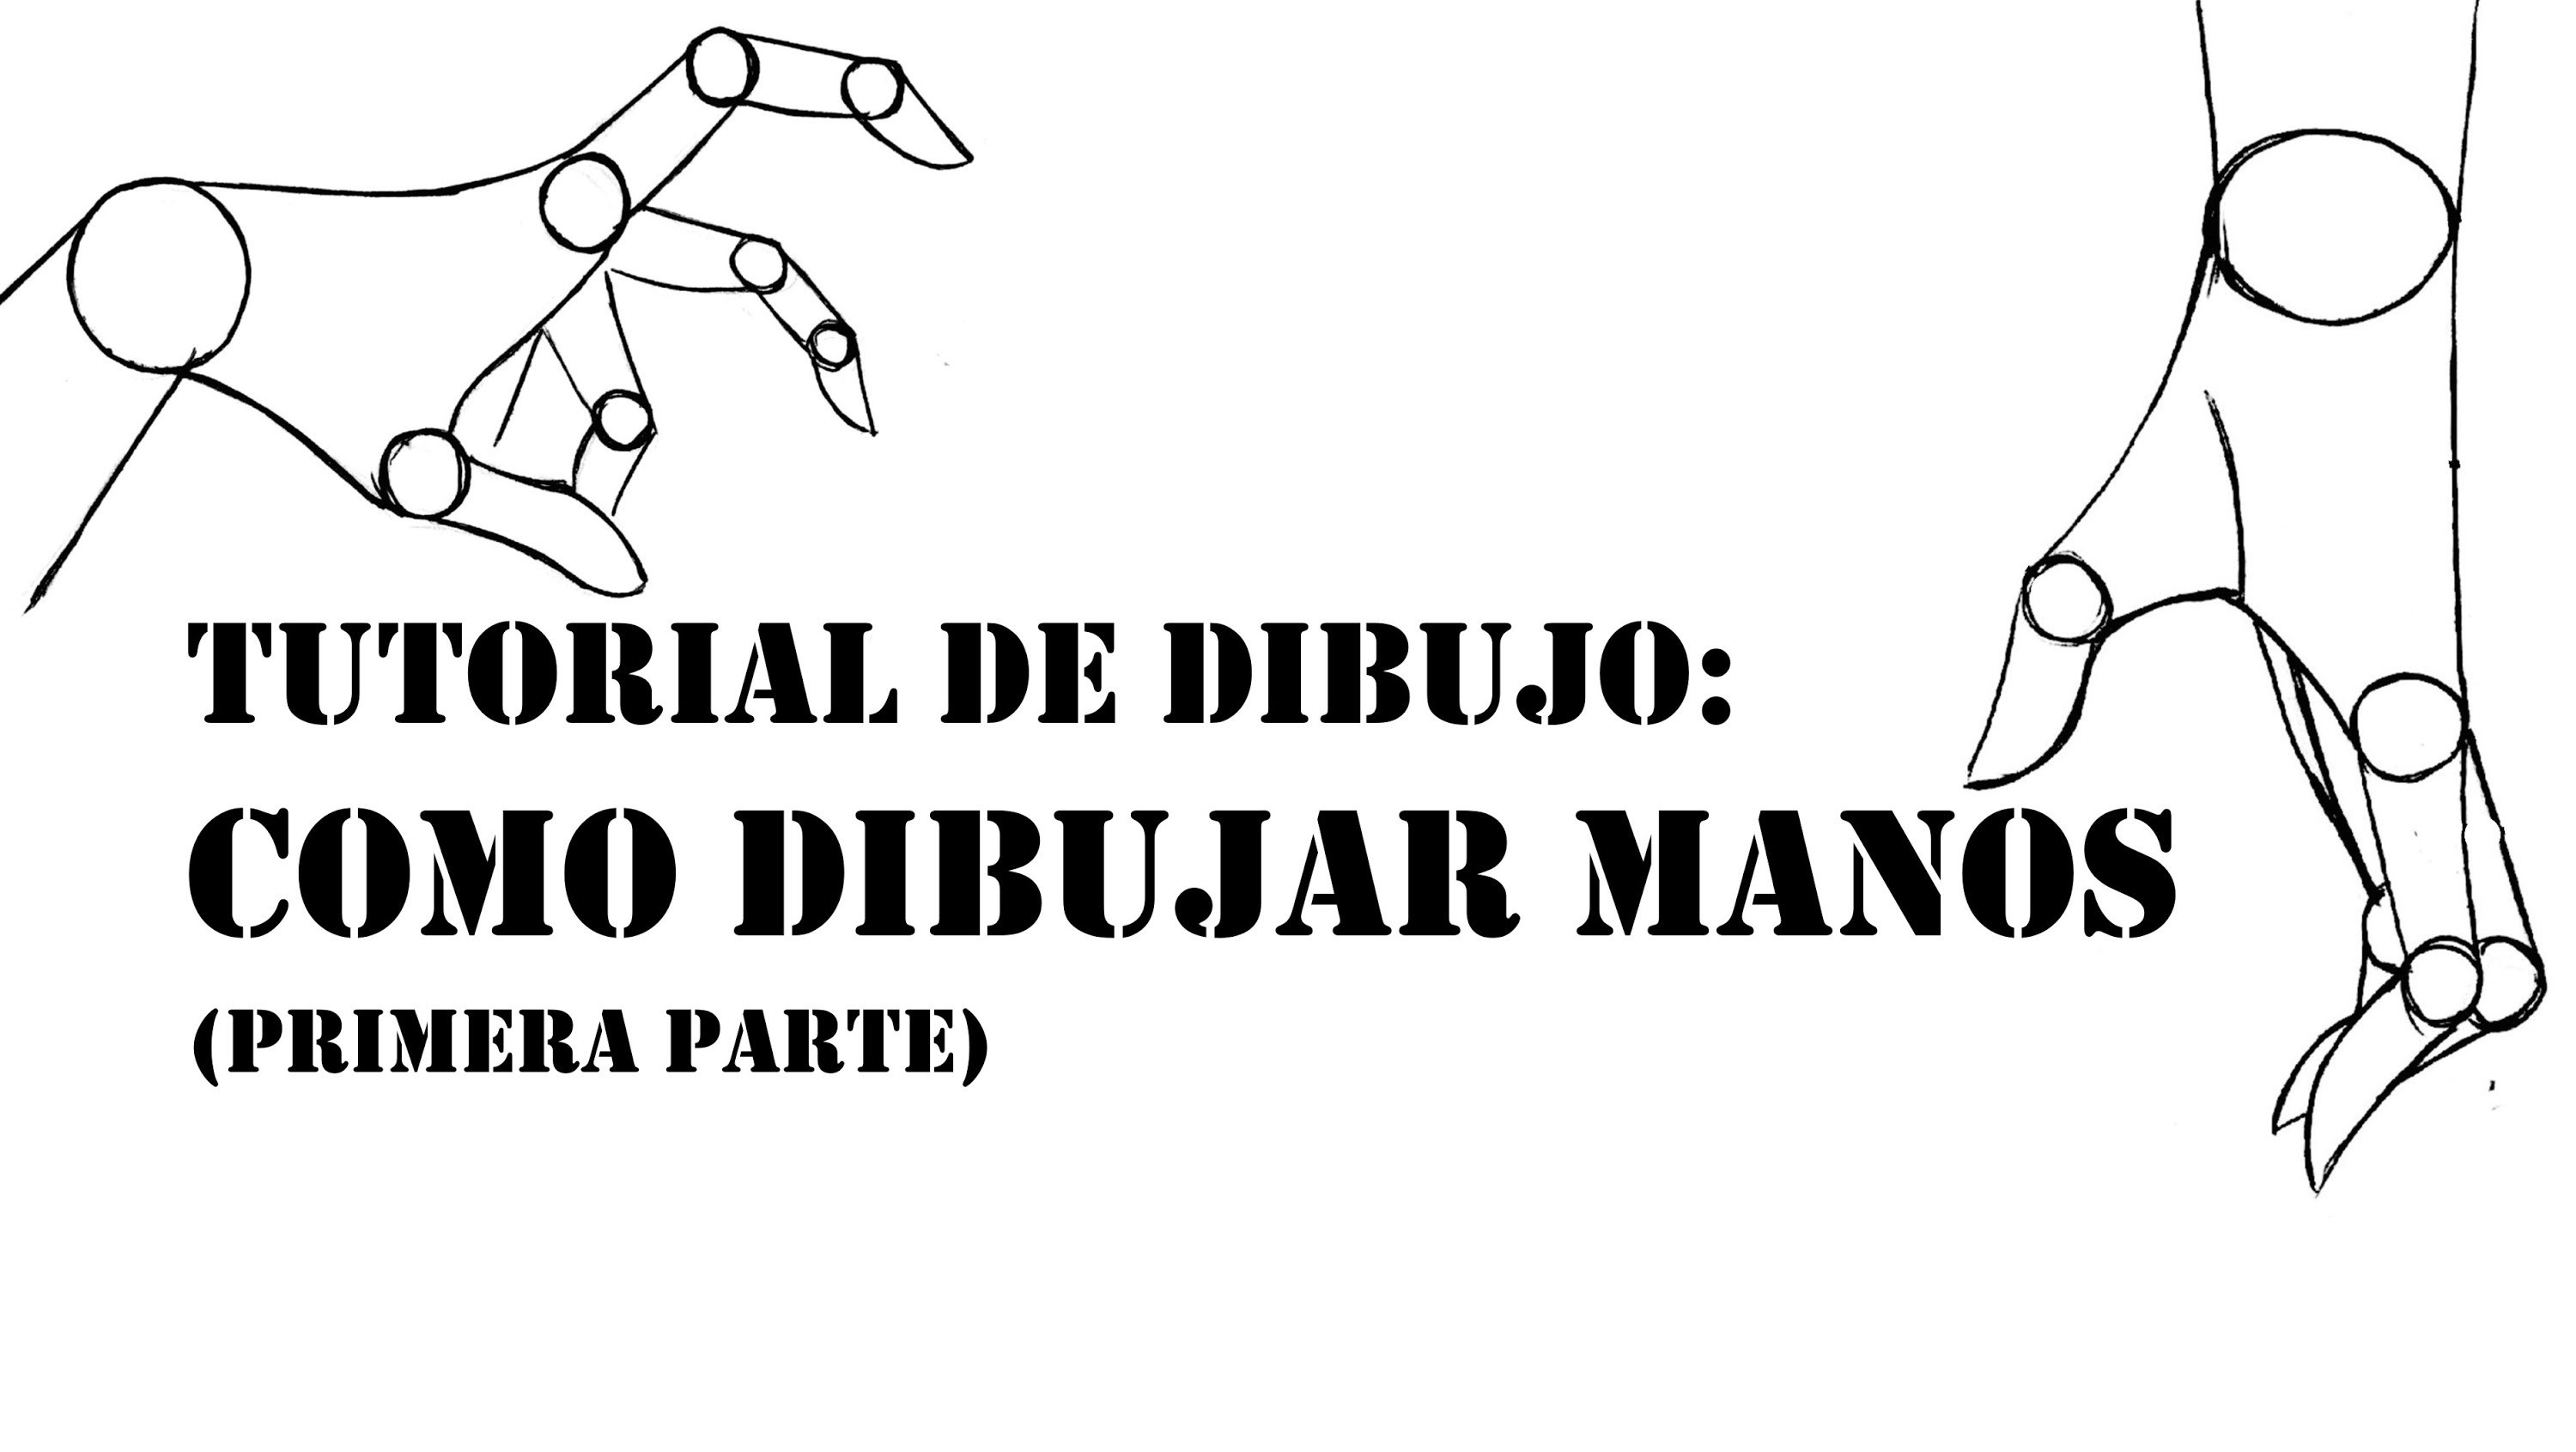 TUTORIAL DE DIBUJO - COMO DIBUJAR MANOS (primera parte)